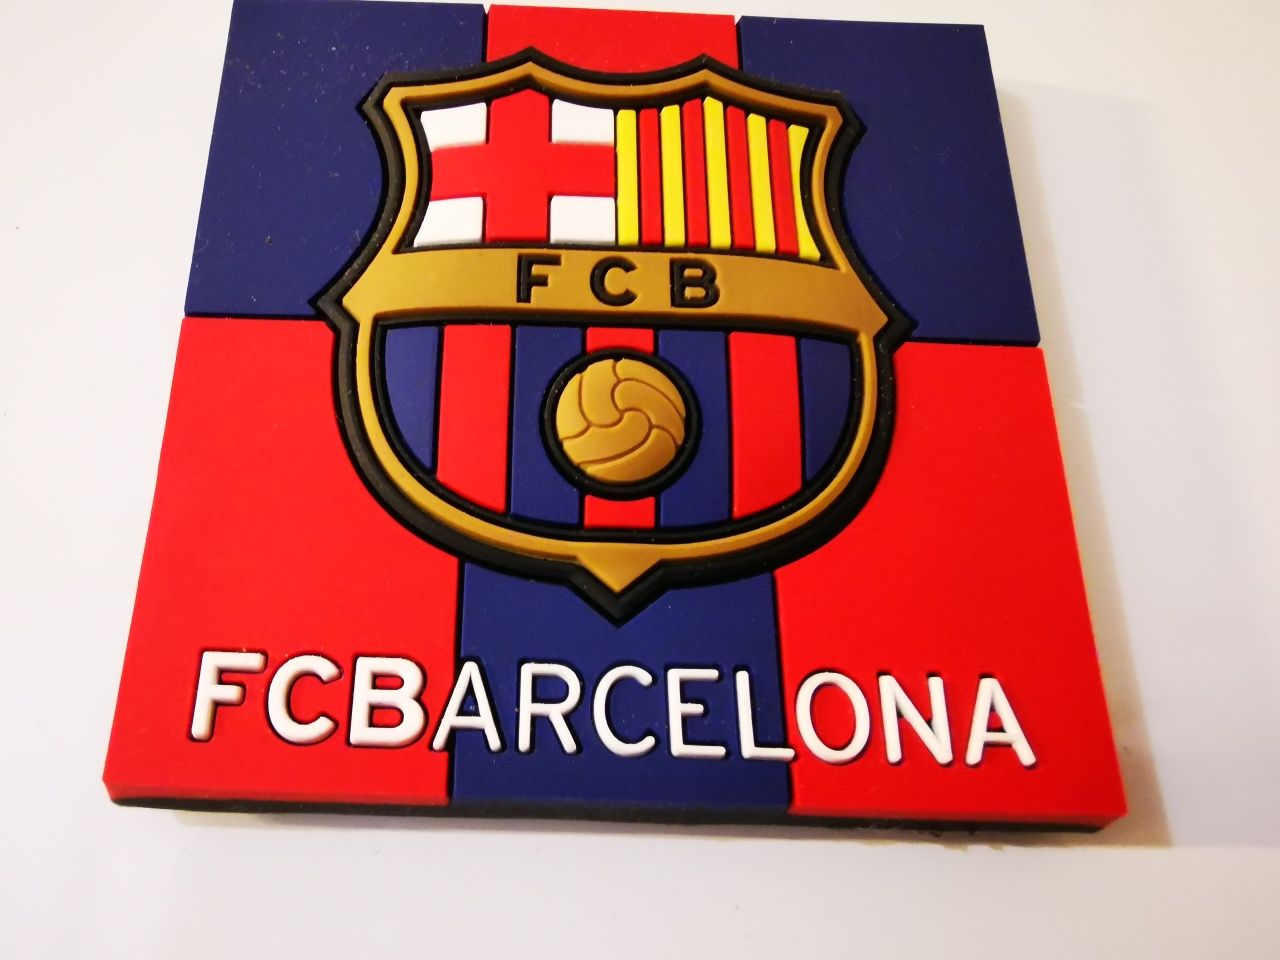 Magnes kluby FC Barcelona oryginalny z hologramem